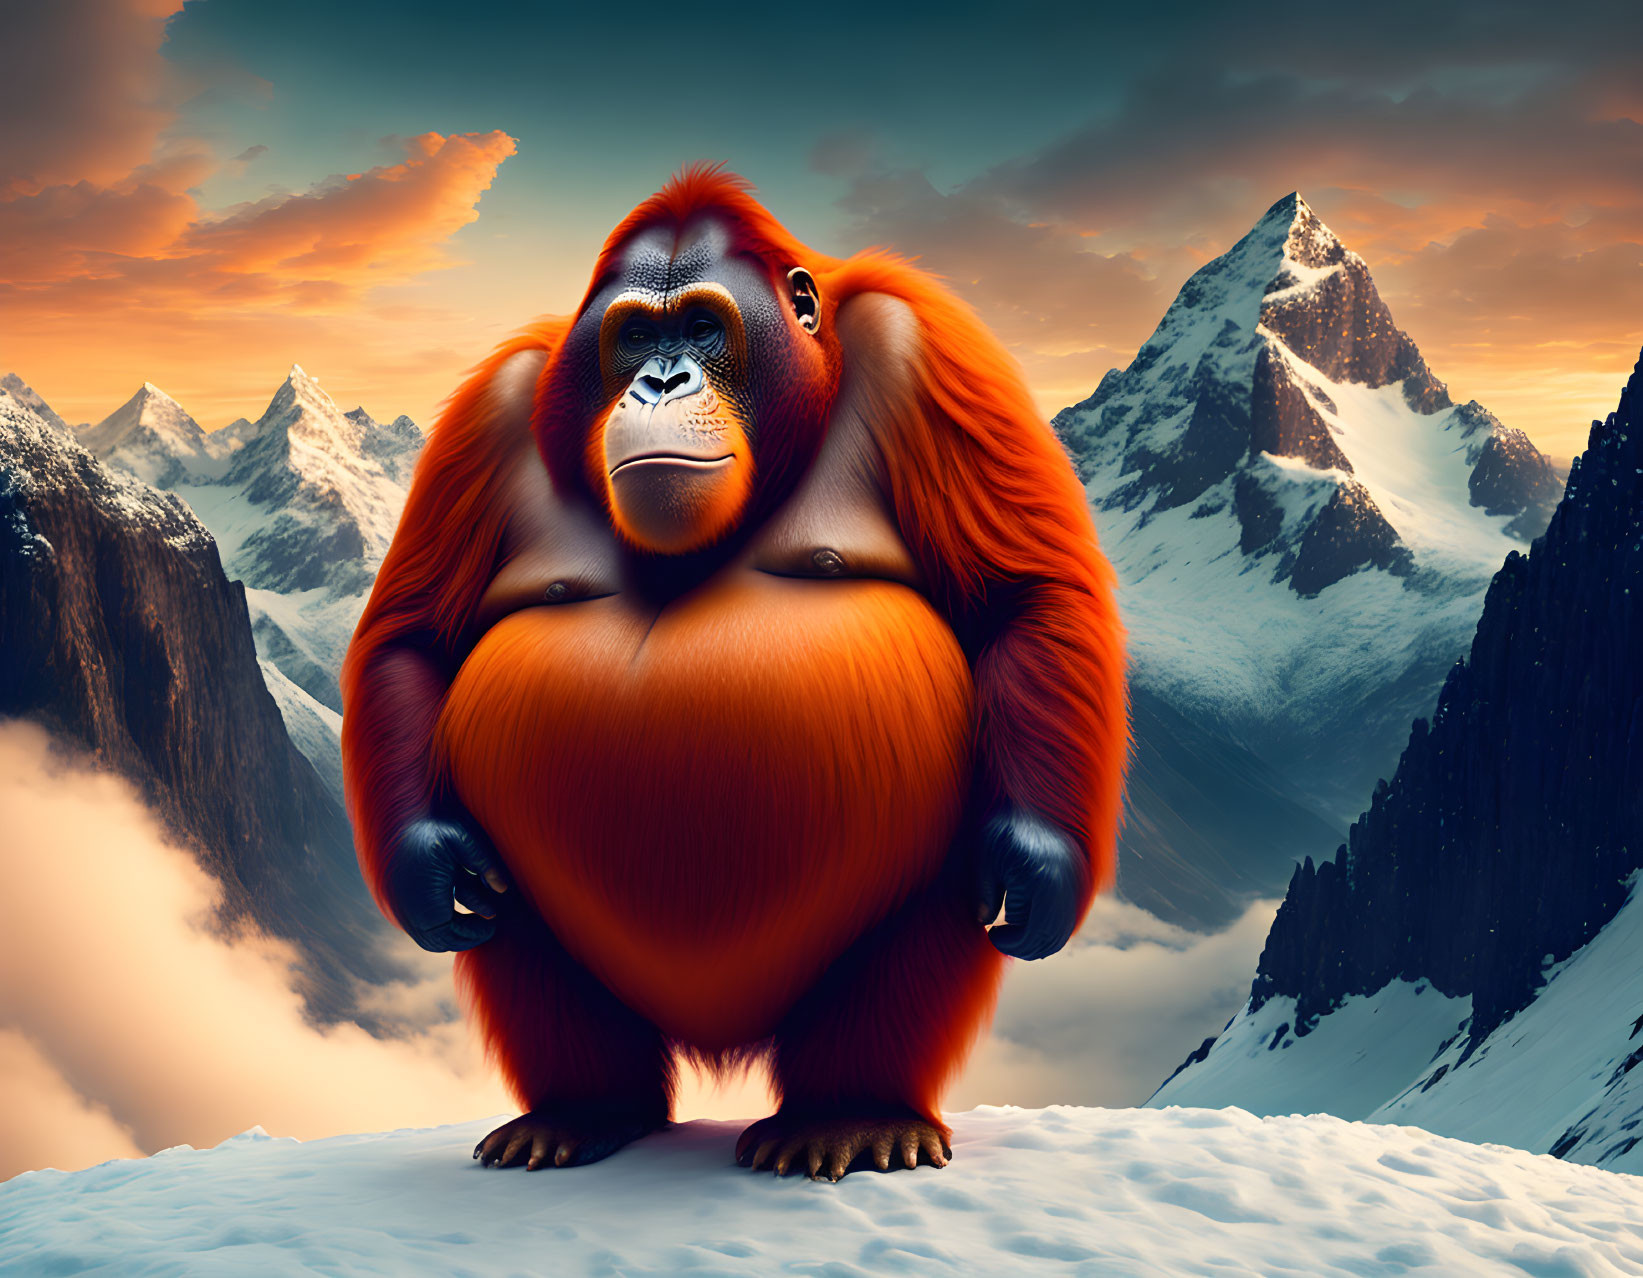 Orangutan on Mountain